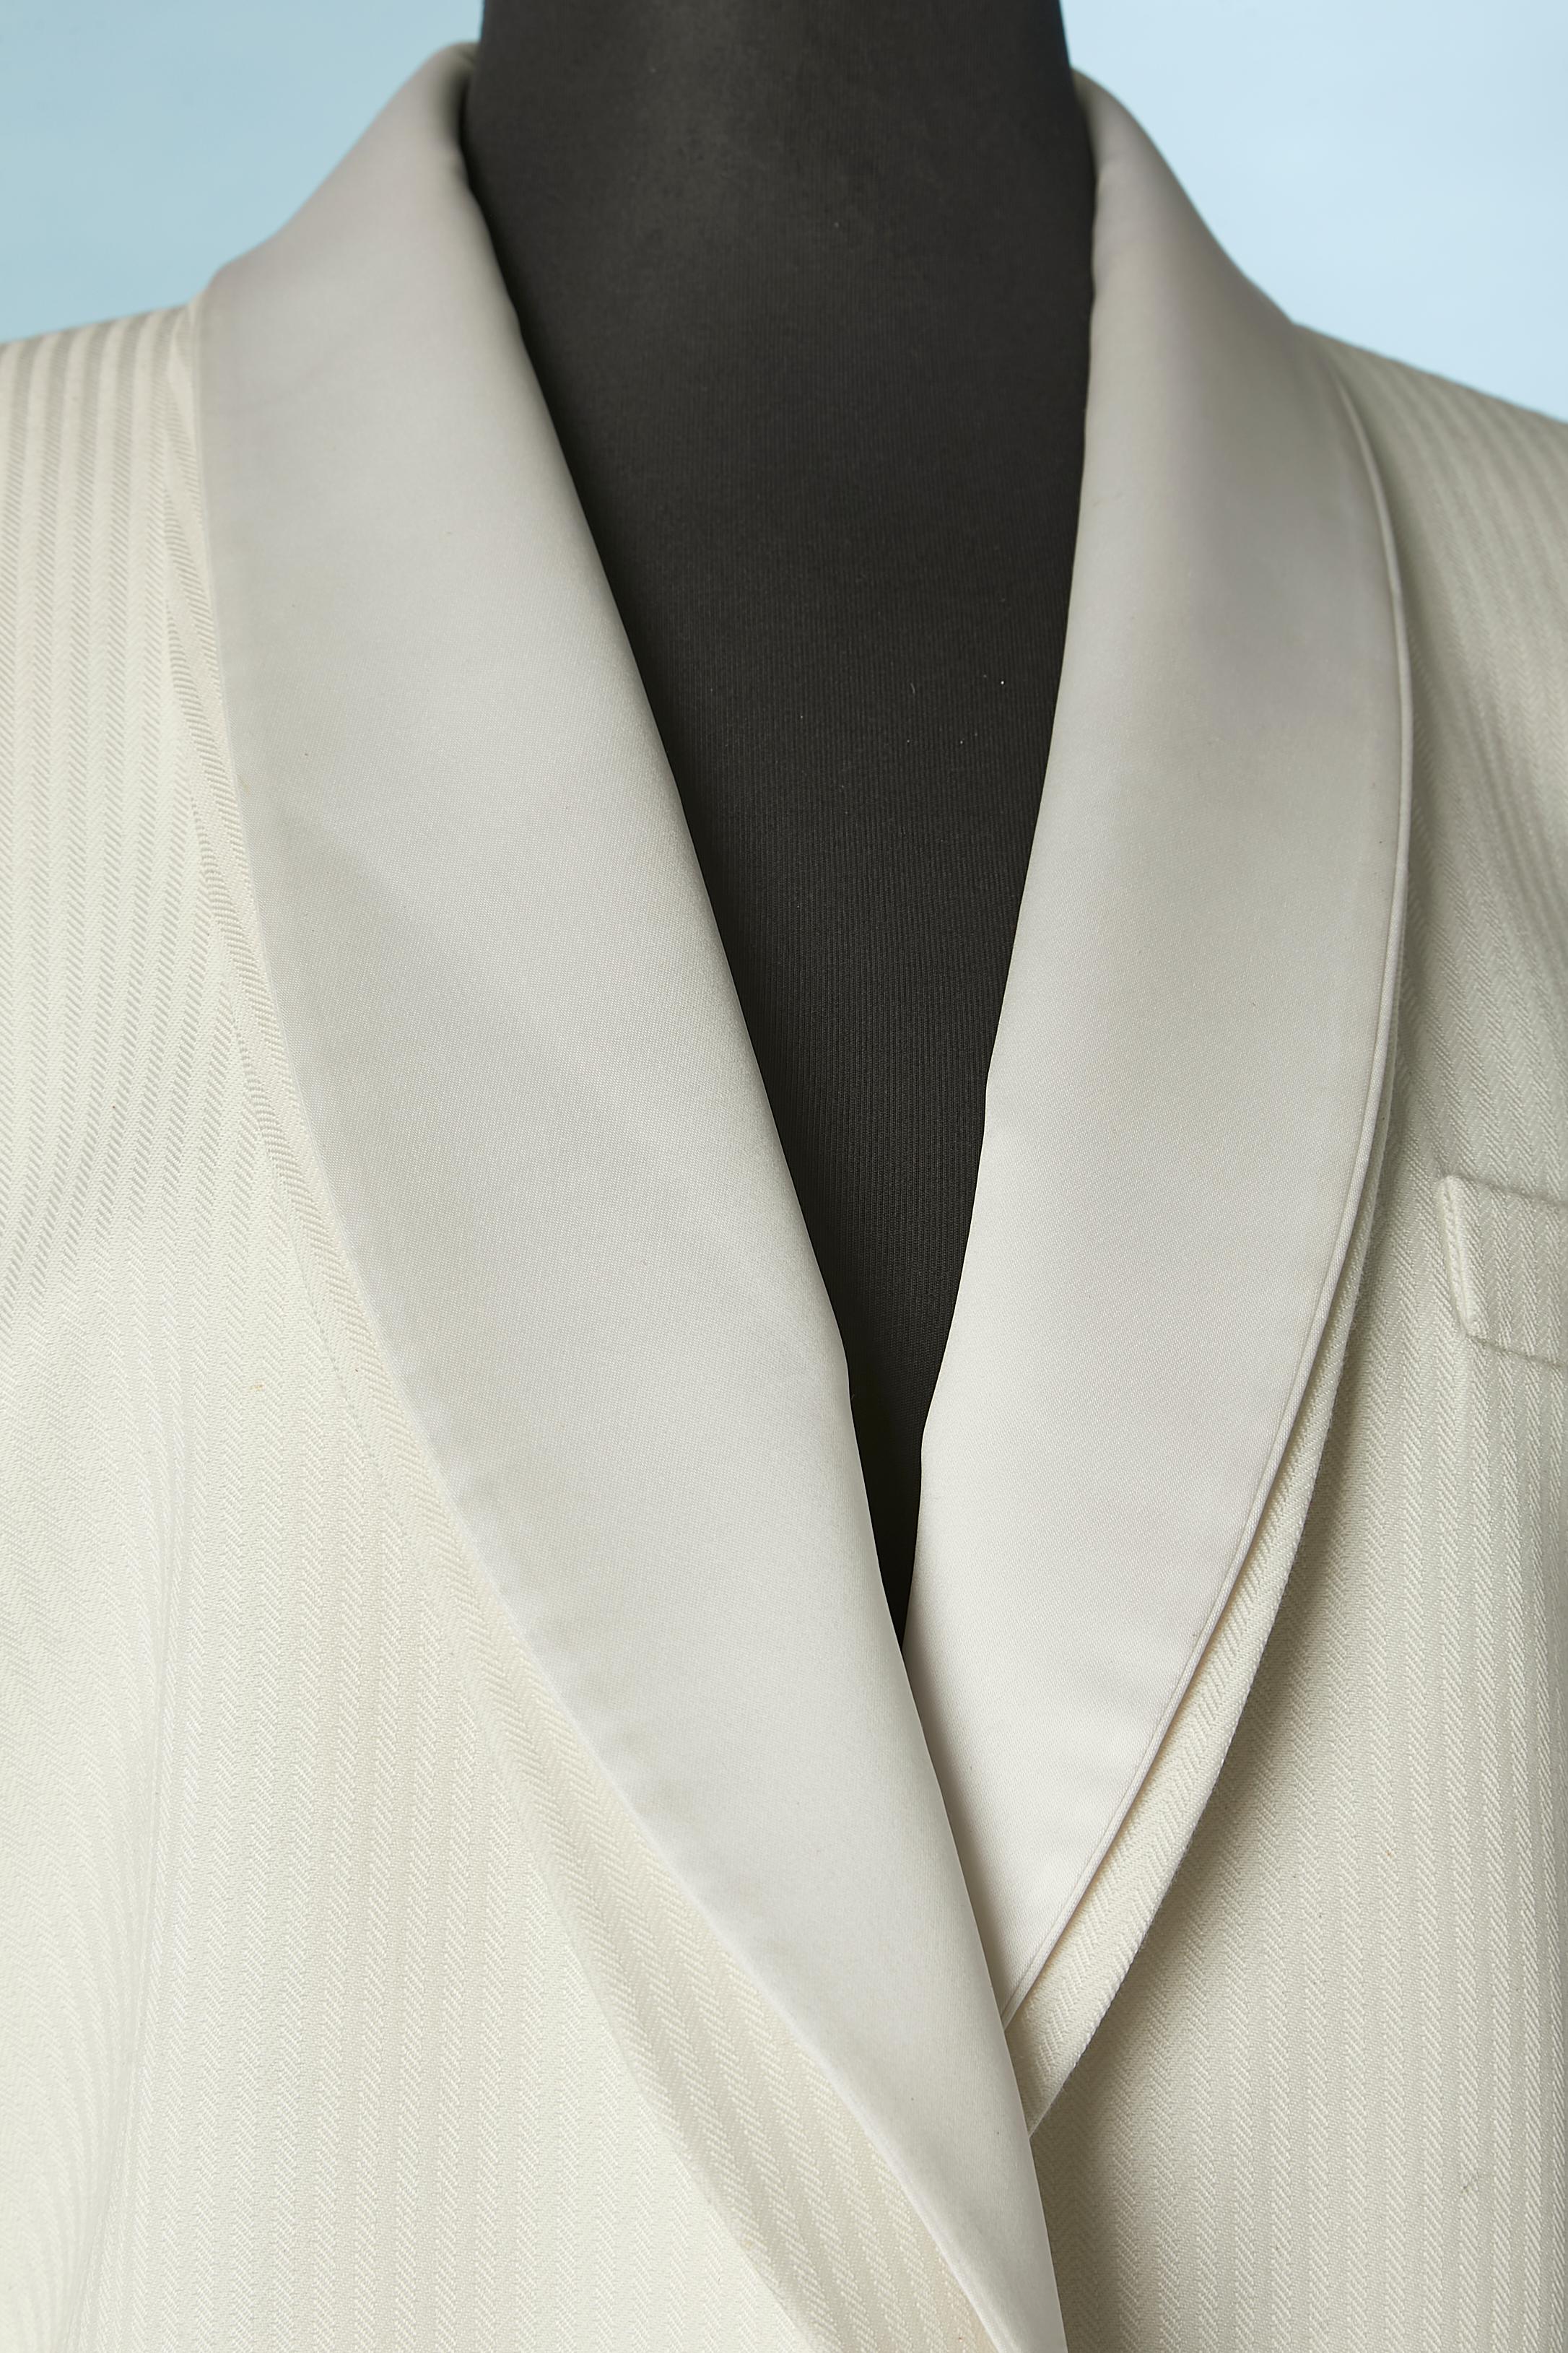 Tuxedo-Anzug mit weißem Chevronmuster und Satinkragen . Keine Stoffzusammensetzung Tag schneiden mai Stoff ist wahrscheinlich Baumwolle, 2. Kragen Stoff ist Satin (und abnehmbar) und Futter ist wahrscheinlich Acetat oder Viskose. 
Größe 12 (Jacke)